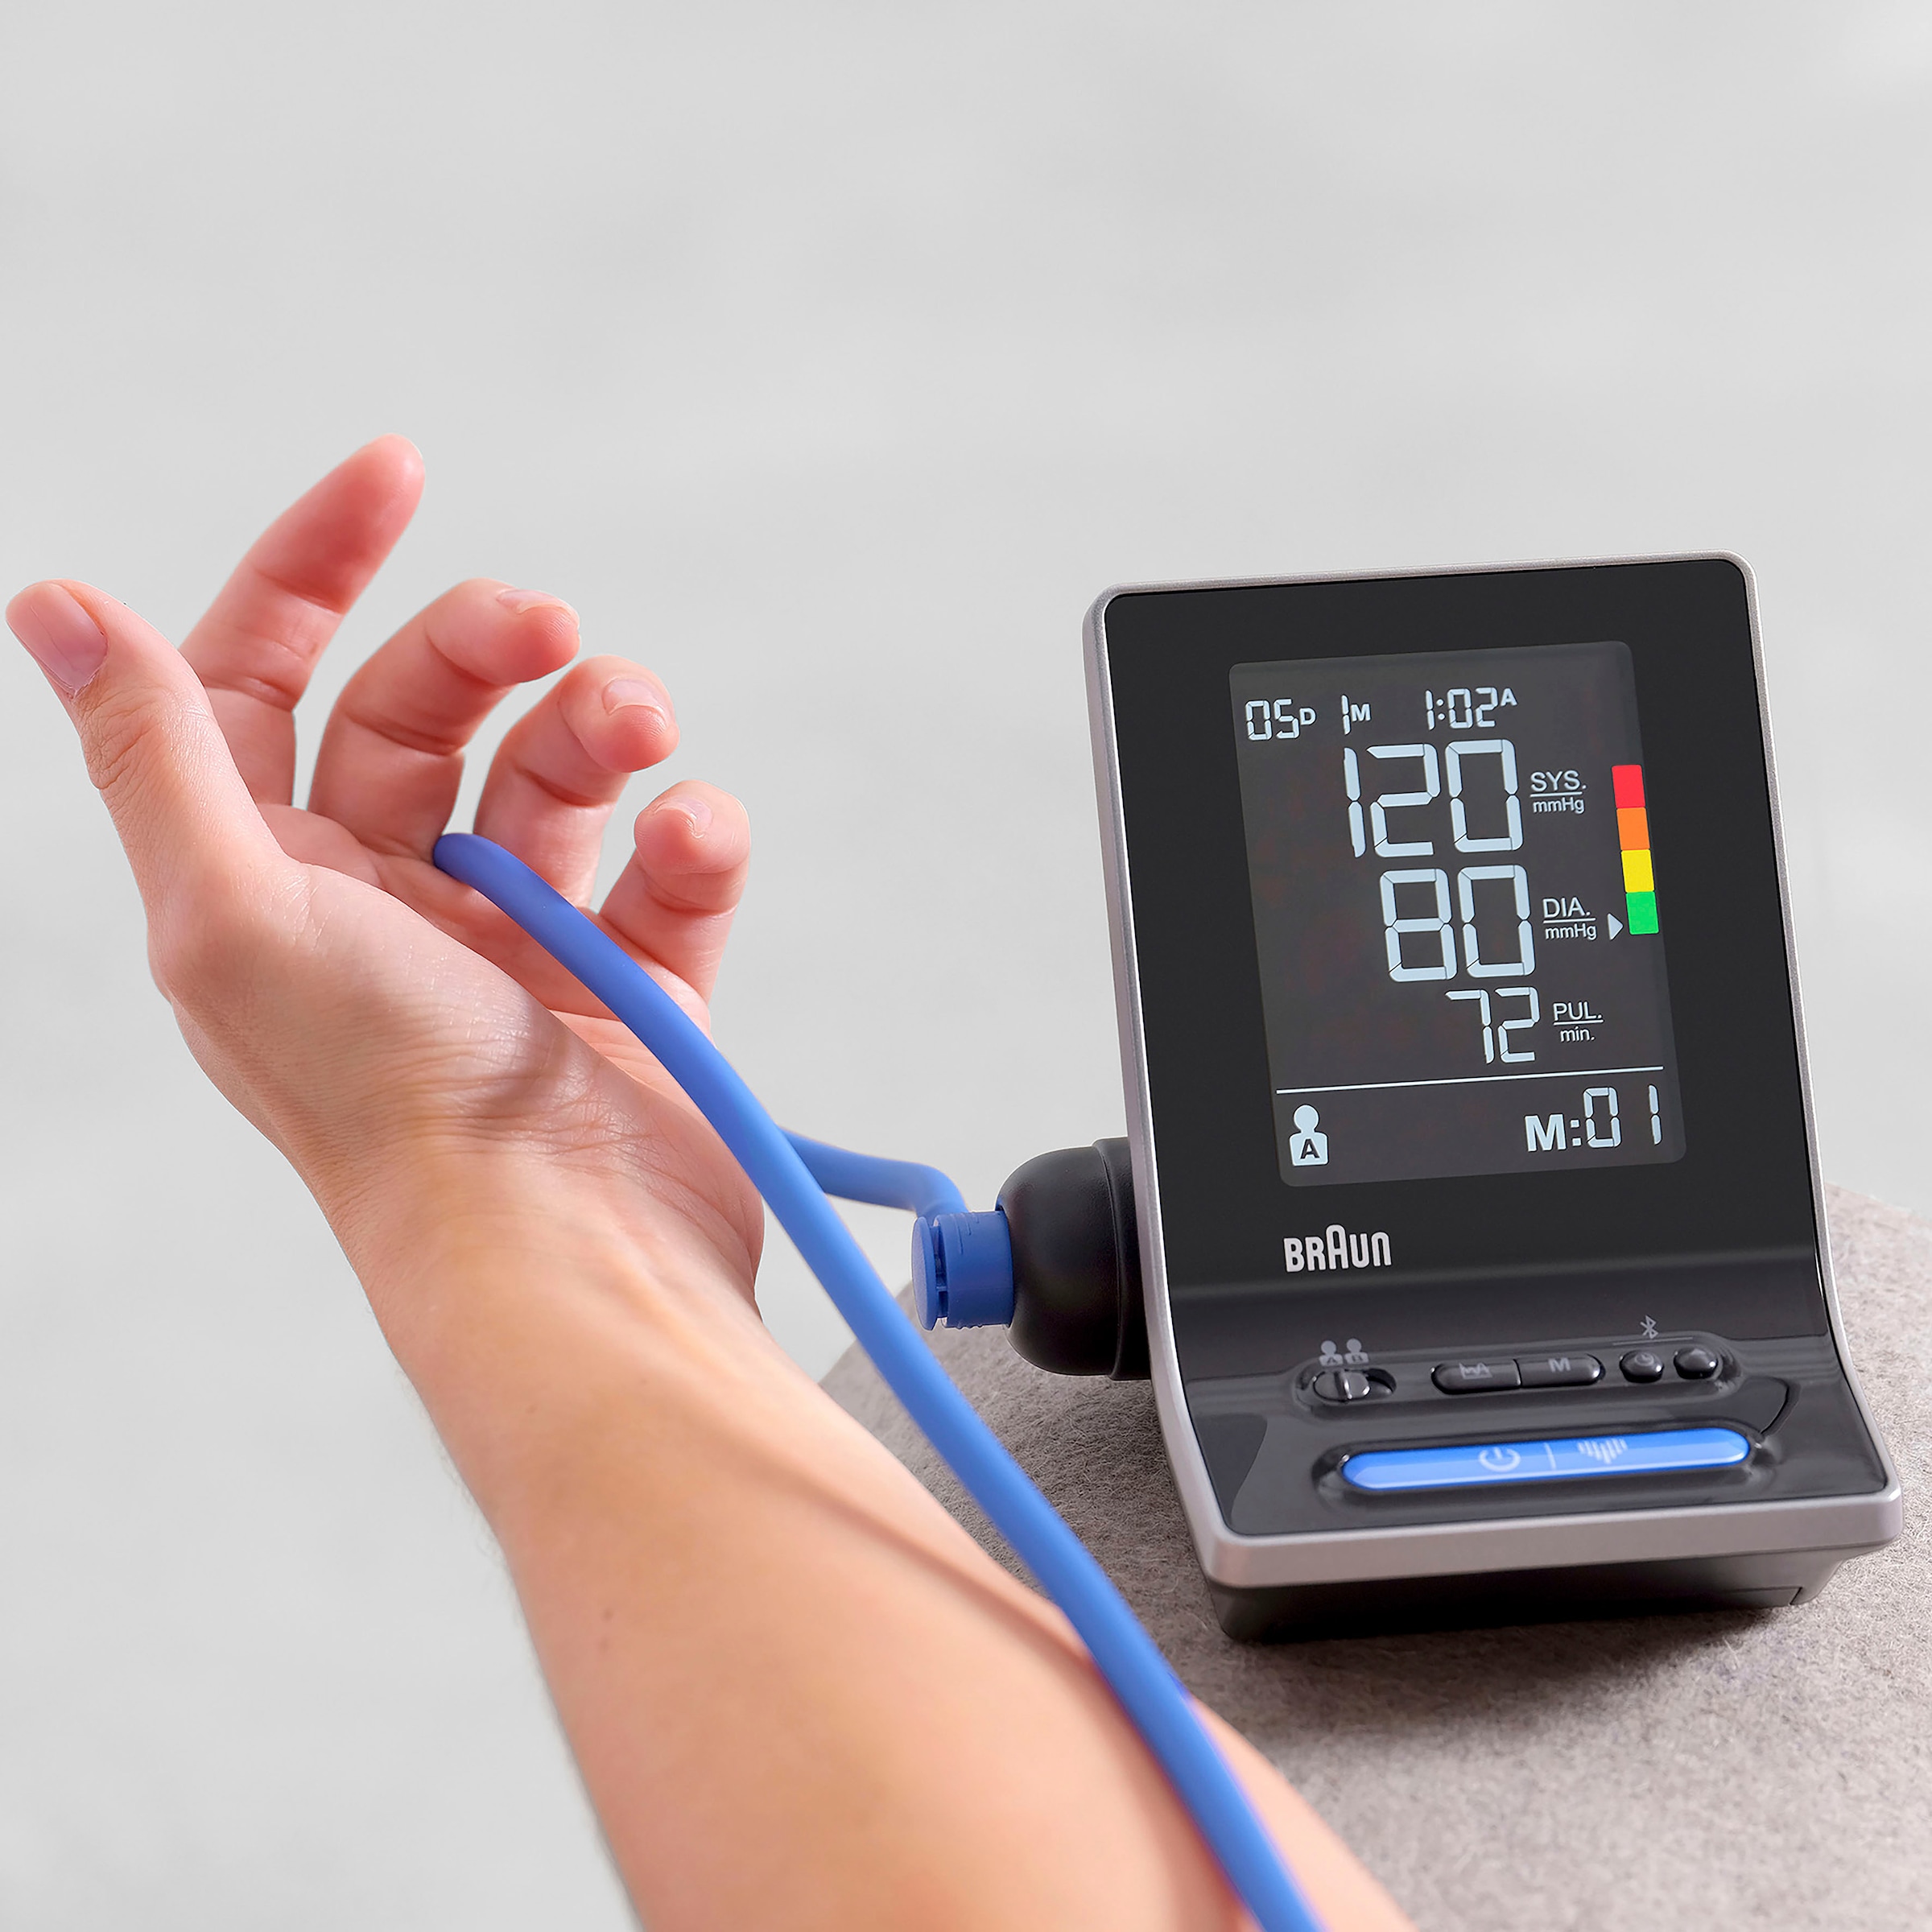 Braun Oberarm-Blutdruckmessgerät »ExactFit™ 5 Connect Intelligentes Blutdruckmessgerät - BUA6350EU«, für Braun Healthy Heart App